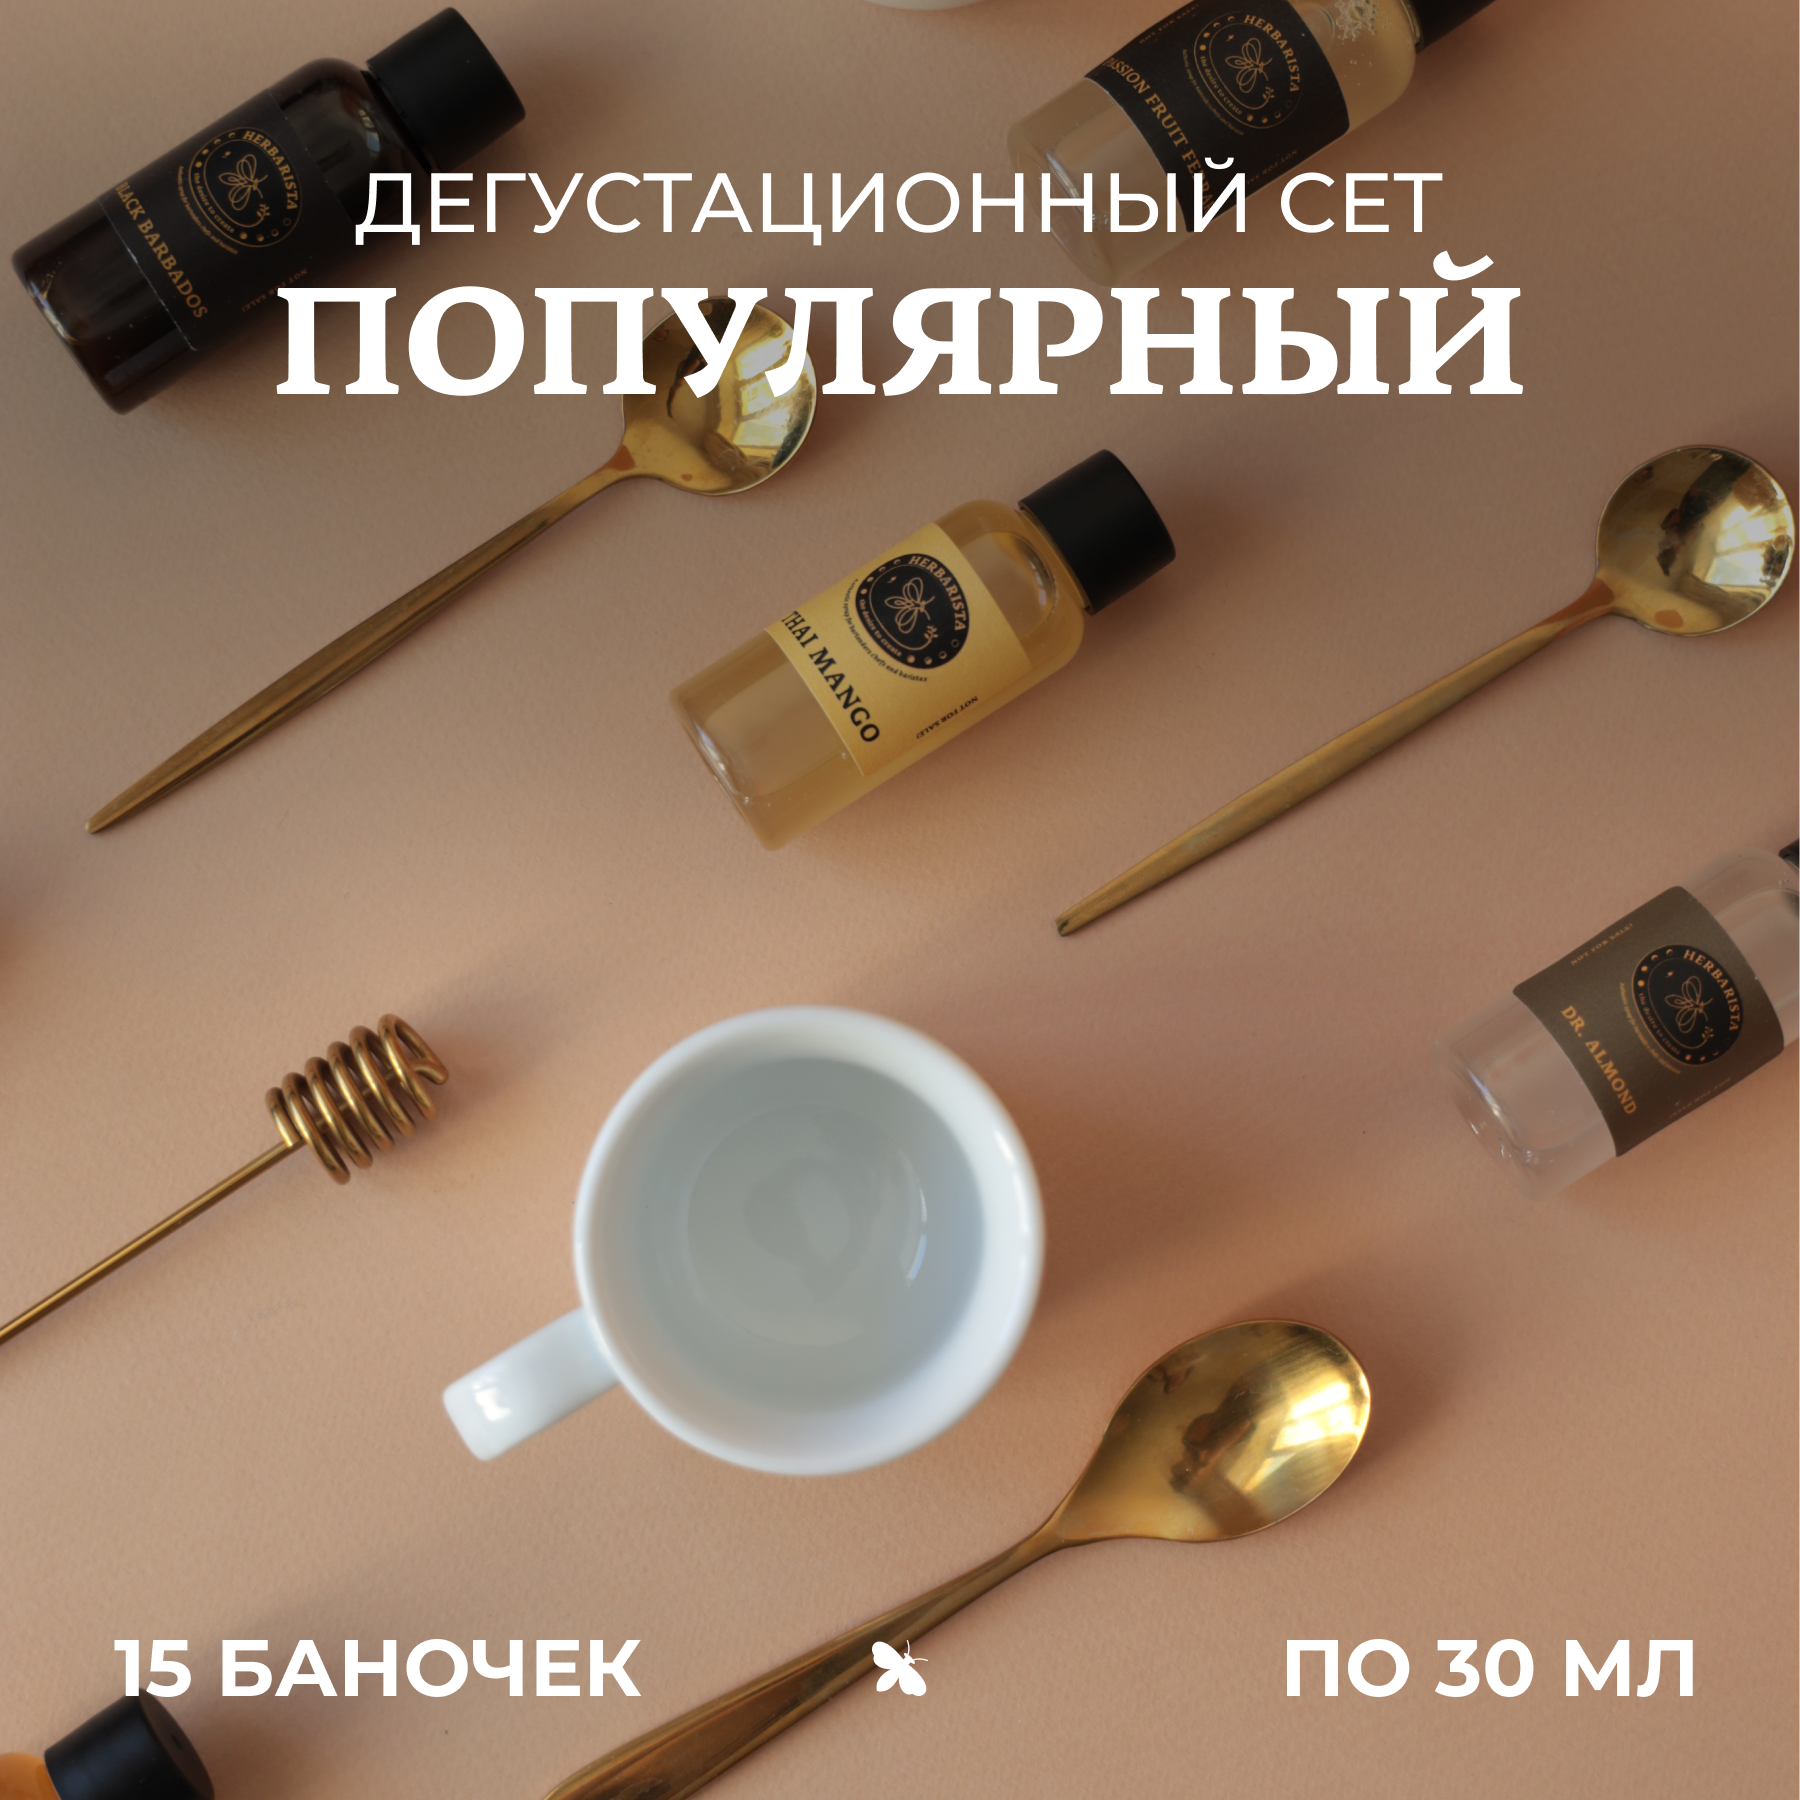 Набор сиропов Herbarista, Дегустационный сет "Популярный" (15 шт. / 30 мл)